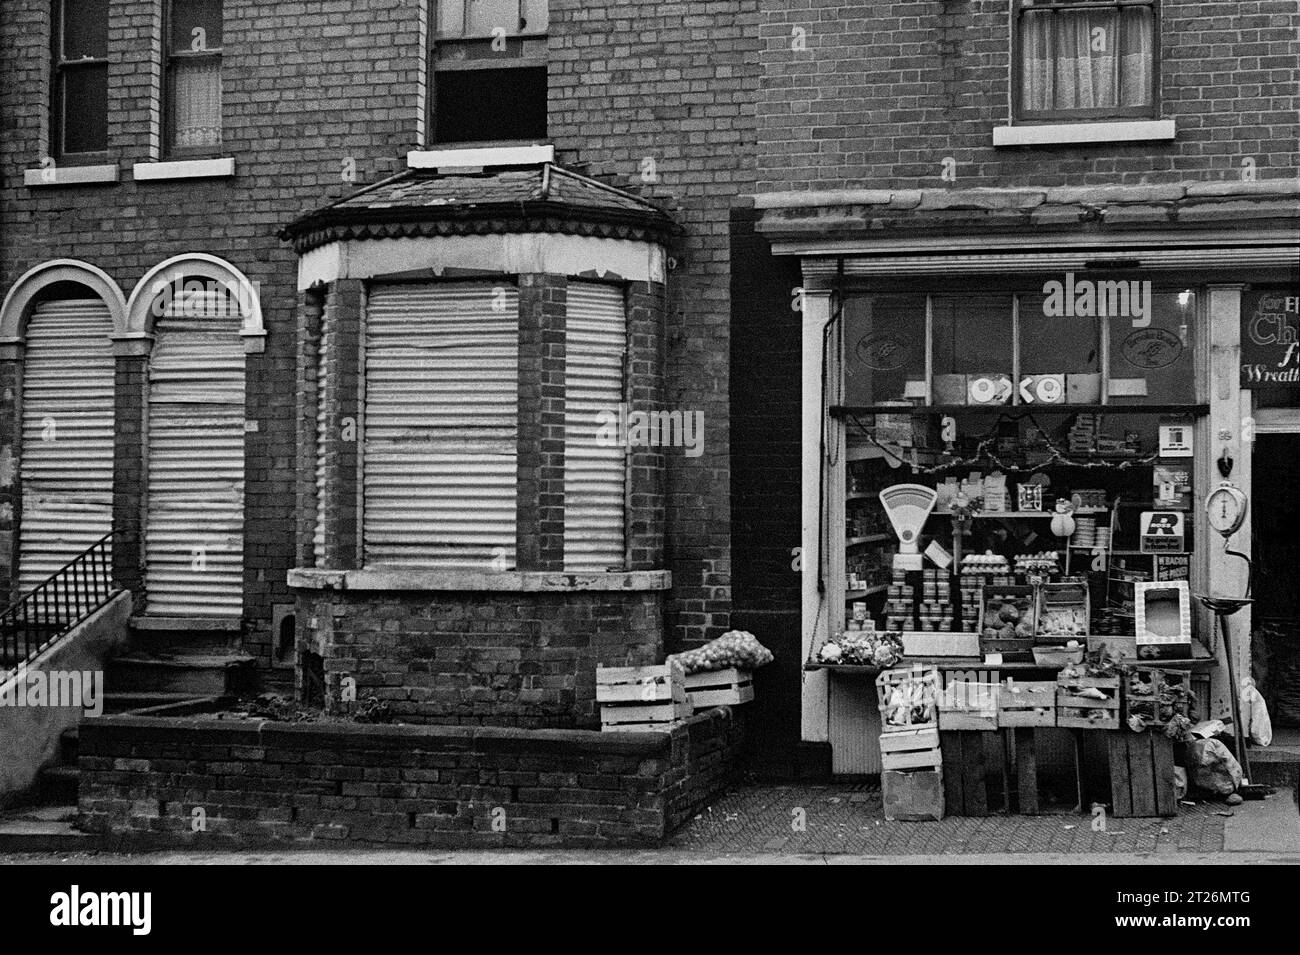 Ein Eckladen mit Obst- und Gemüseshop neben einem Haus, das während der Slumräumung und des Abbruchs von St. Ann's, Nottingham.1969-1972, verschlossen ist Stockfoto